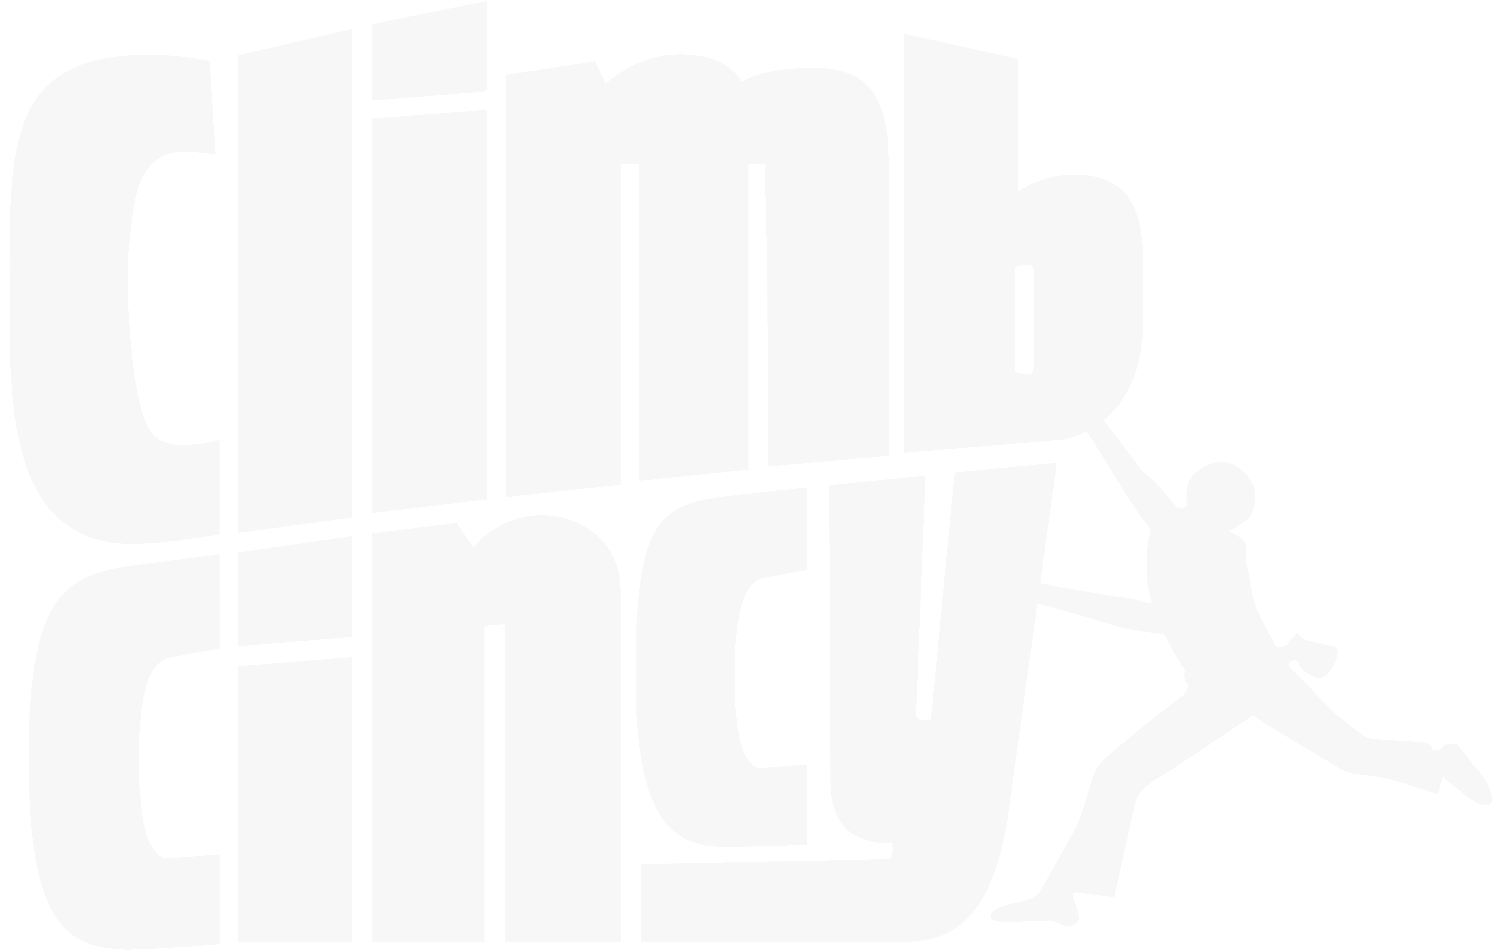 Climb Cincy